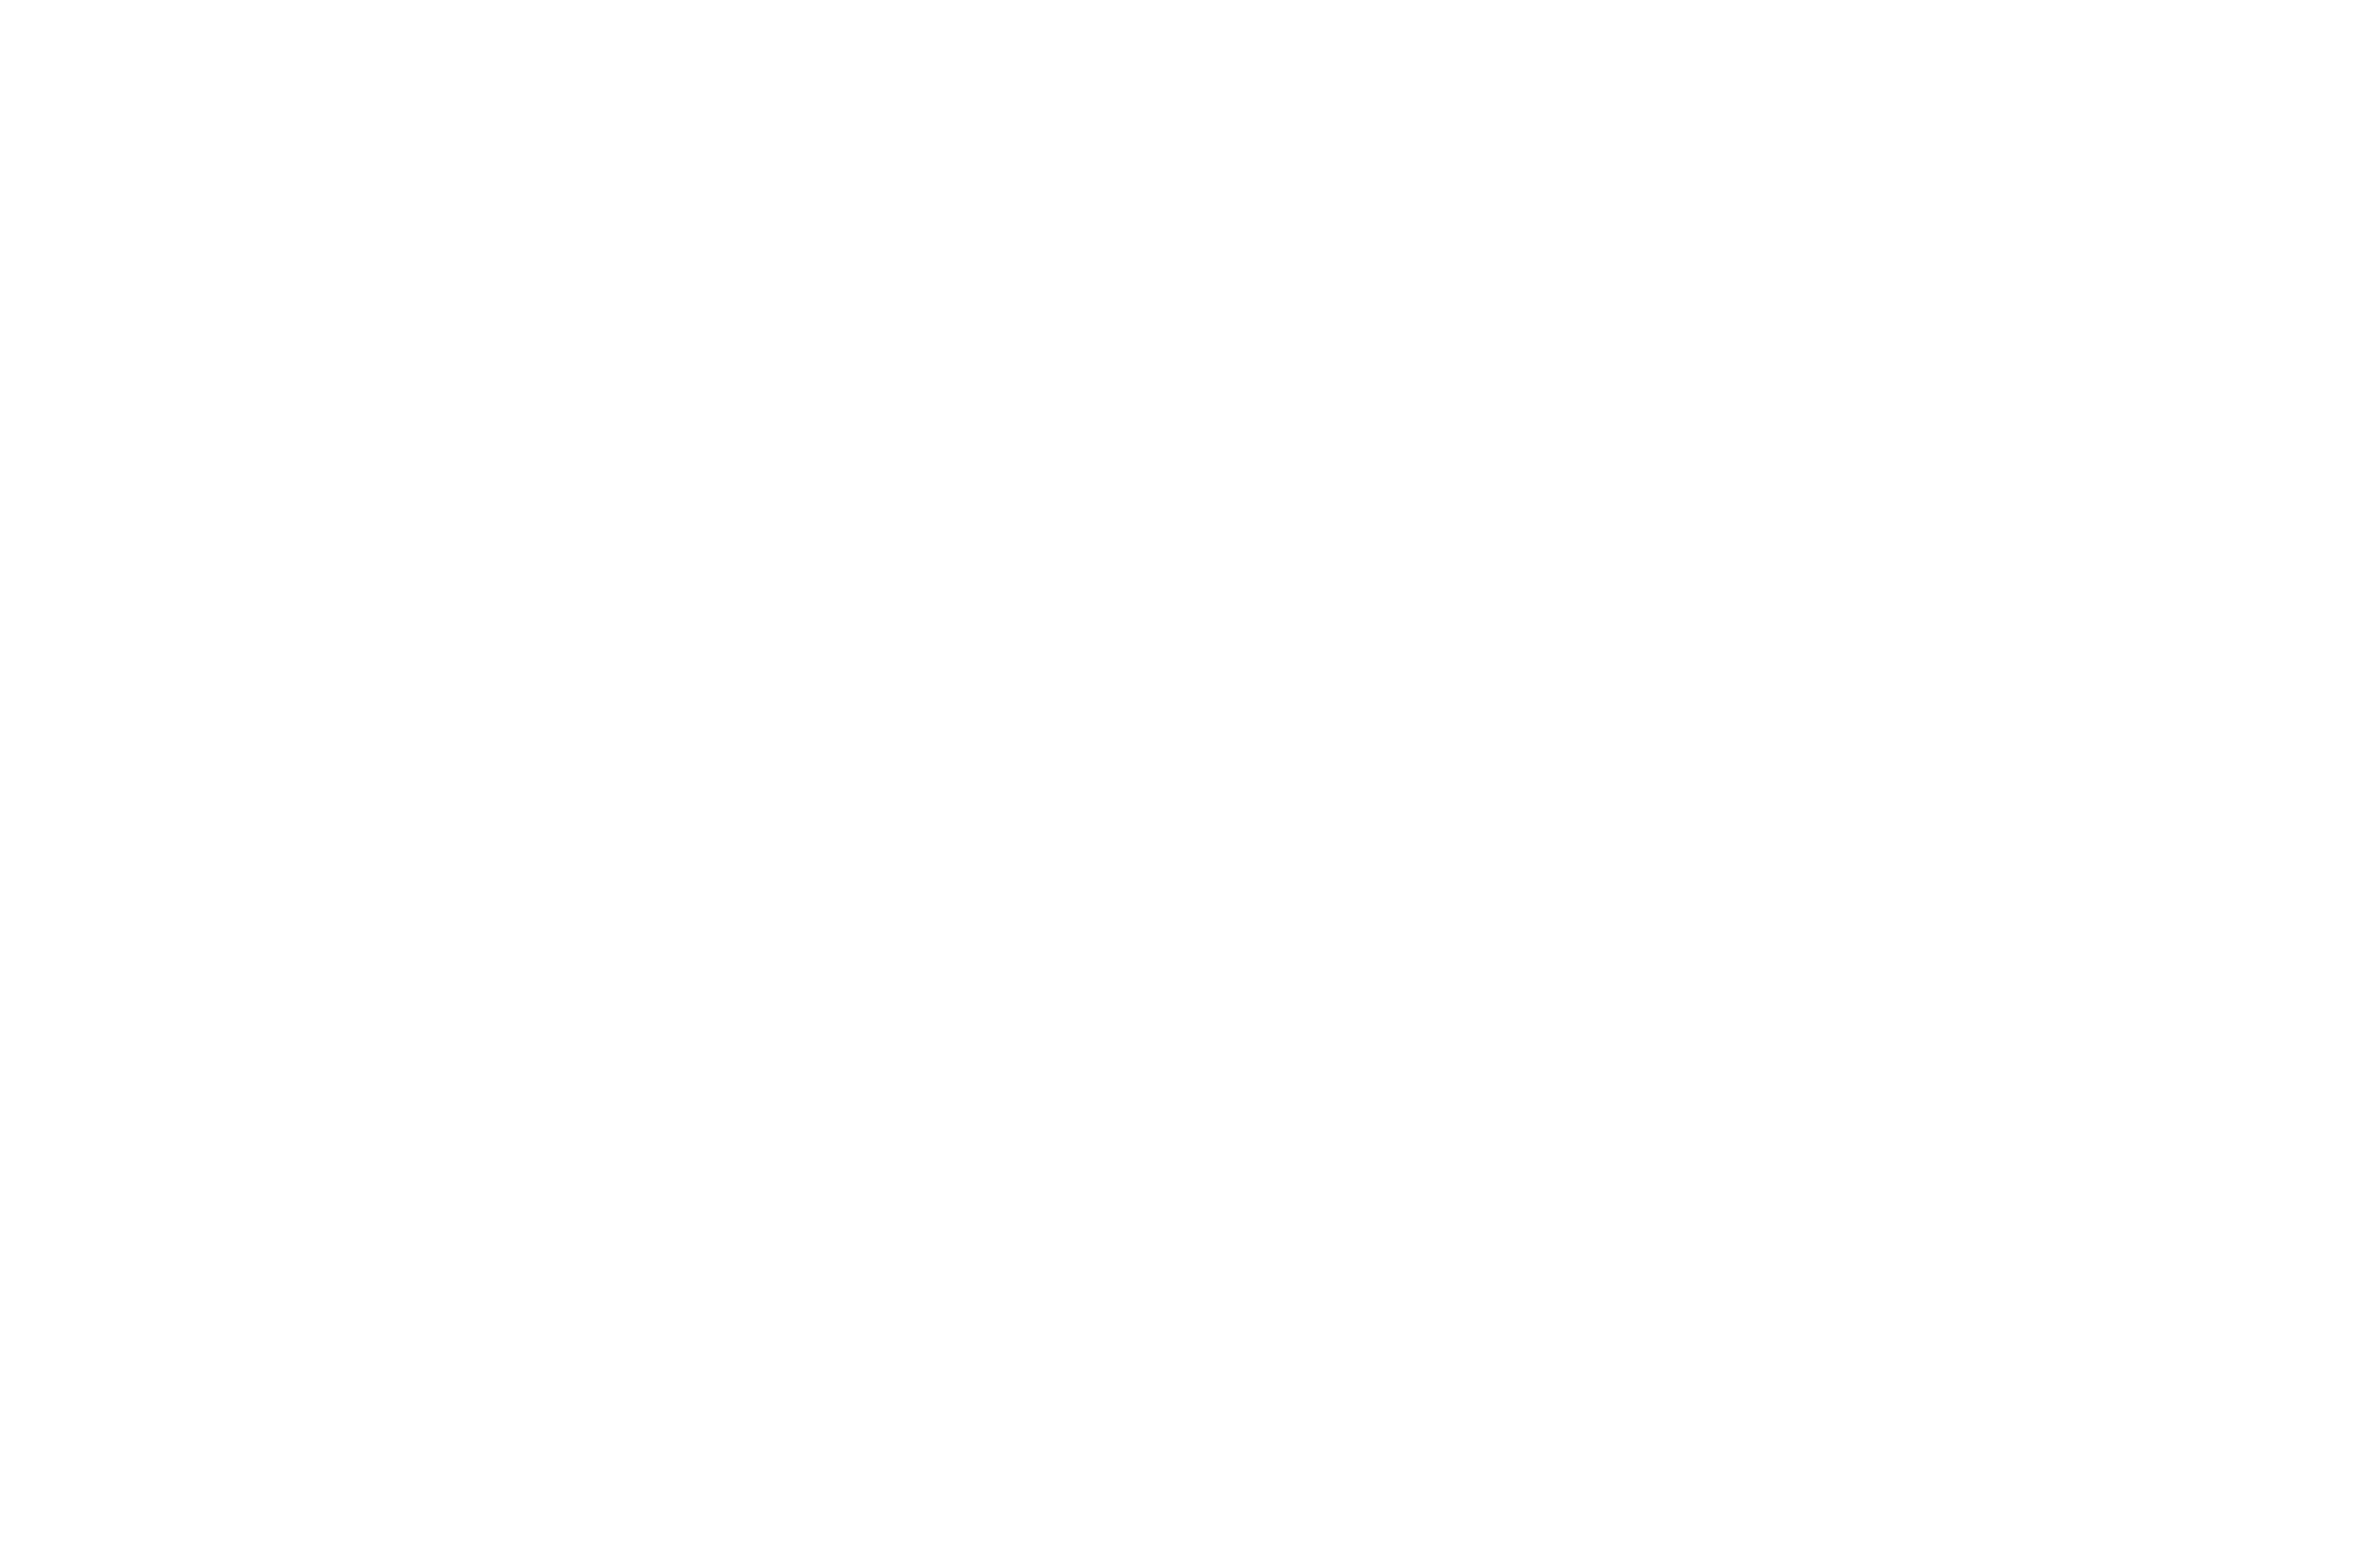 Tony Ronan